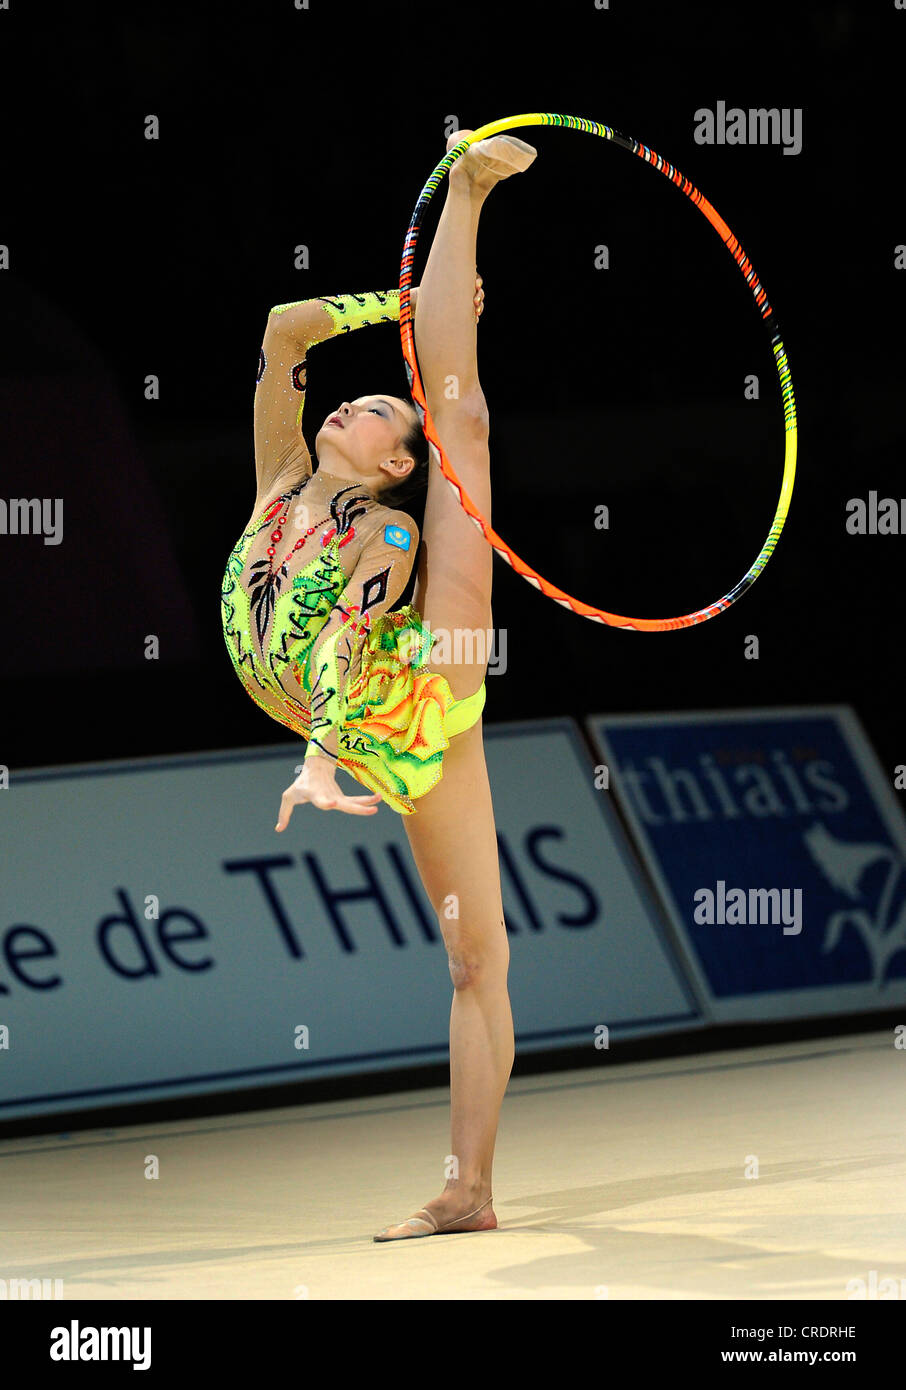 Frau, die rhythmische Gymnastik mit dem Reifen zu tun Stockfotografie -  Alamy